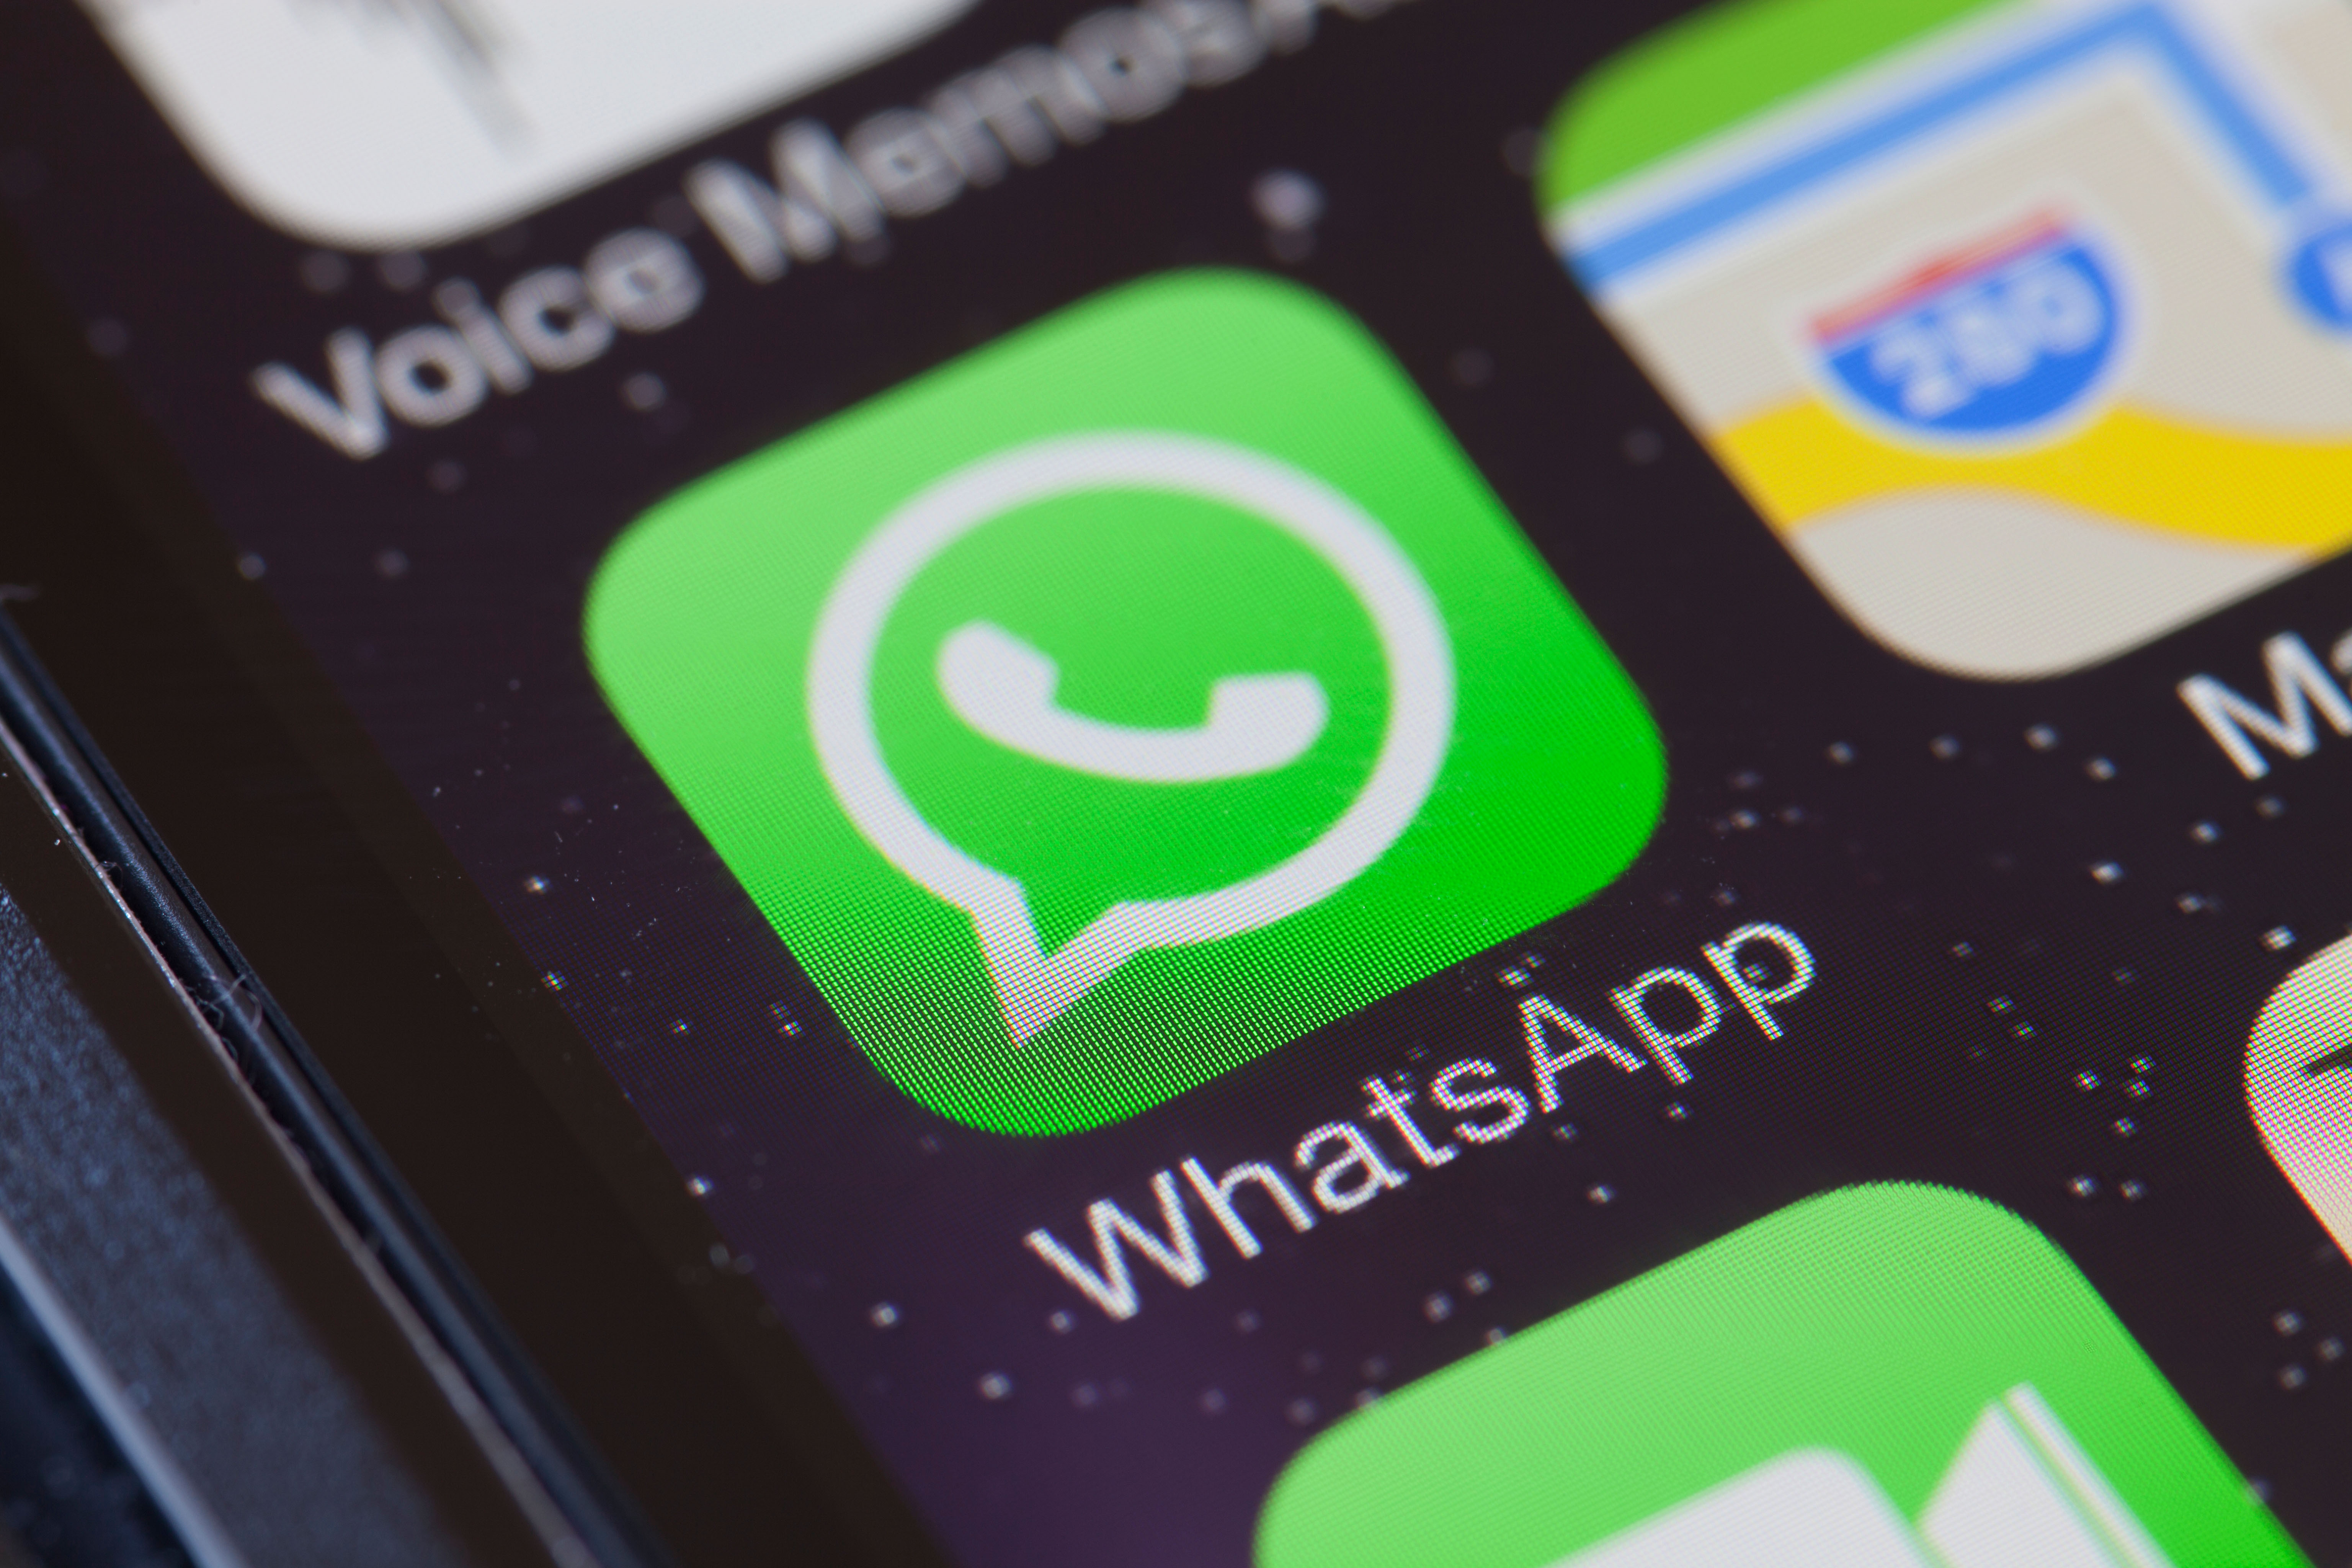     WhatsApp har övervakats för att användas för att sprida falsk information och falska nyheter